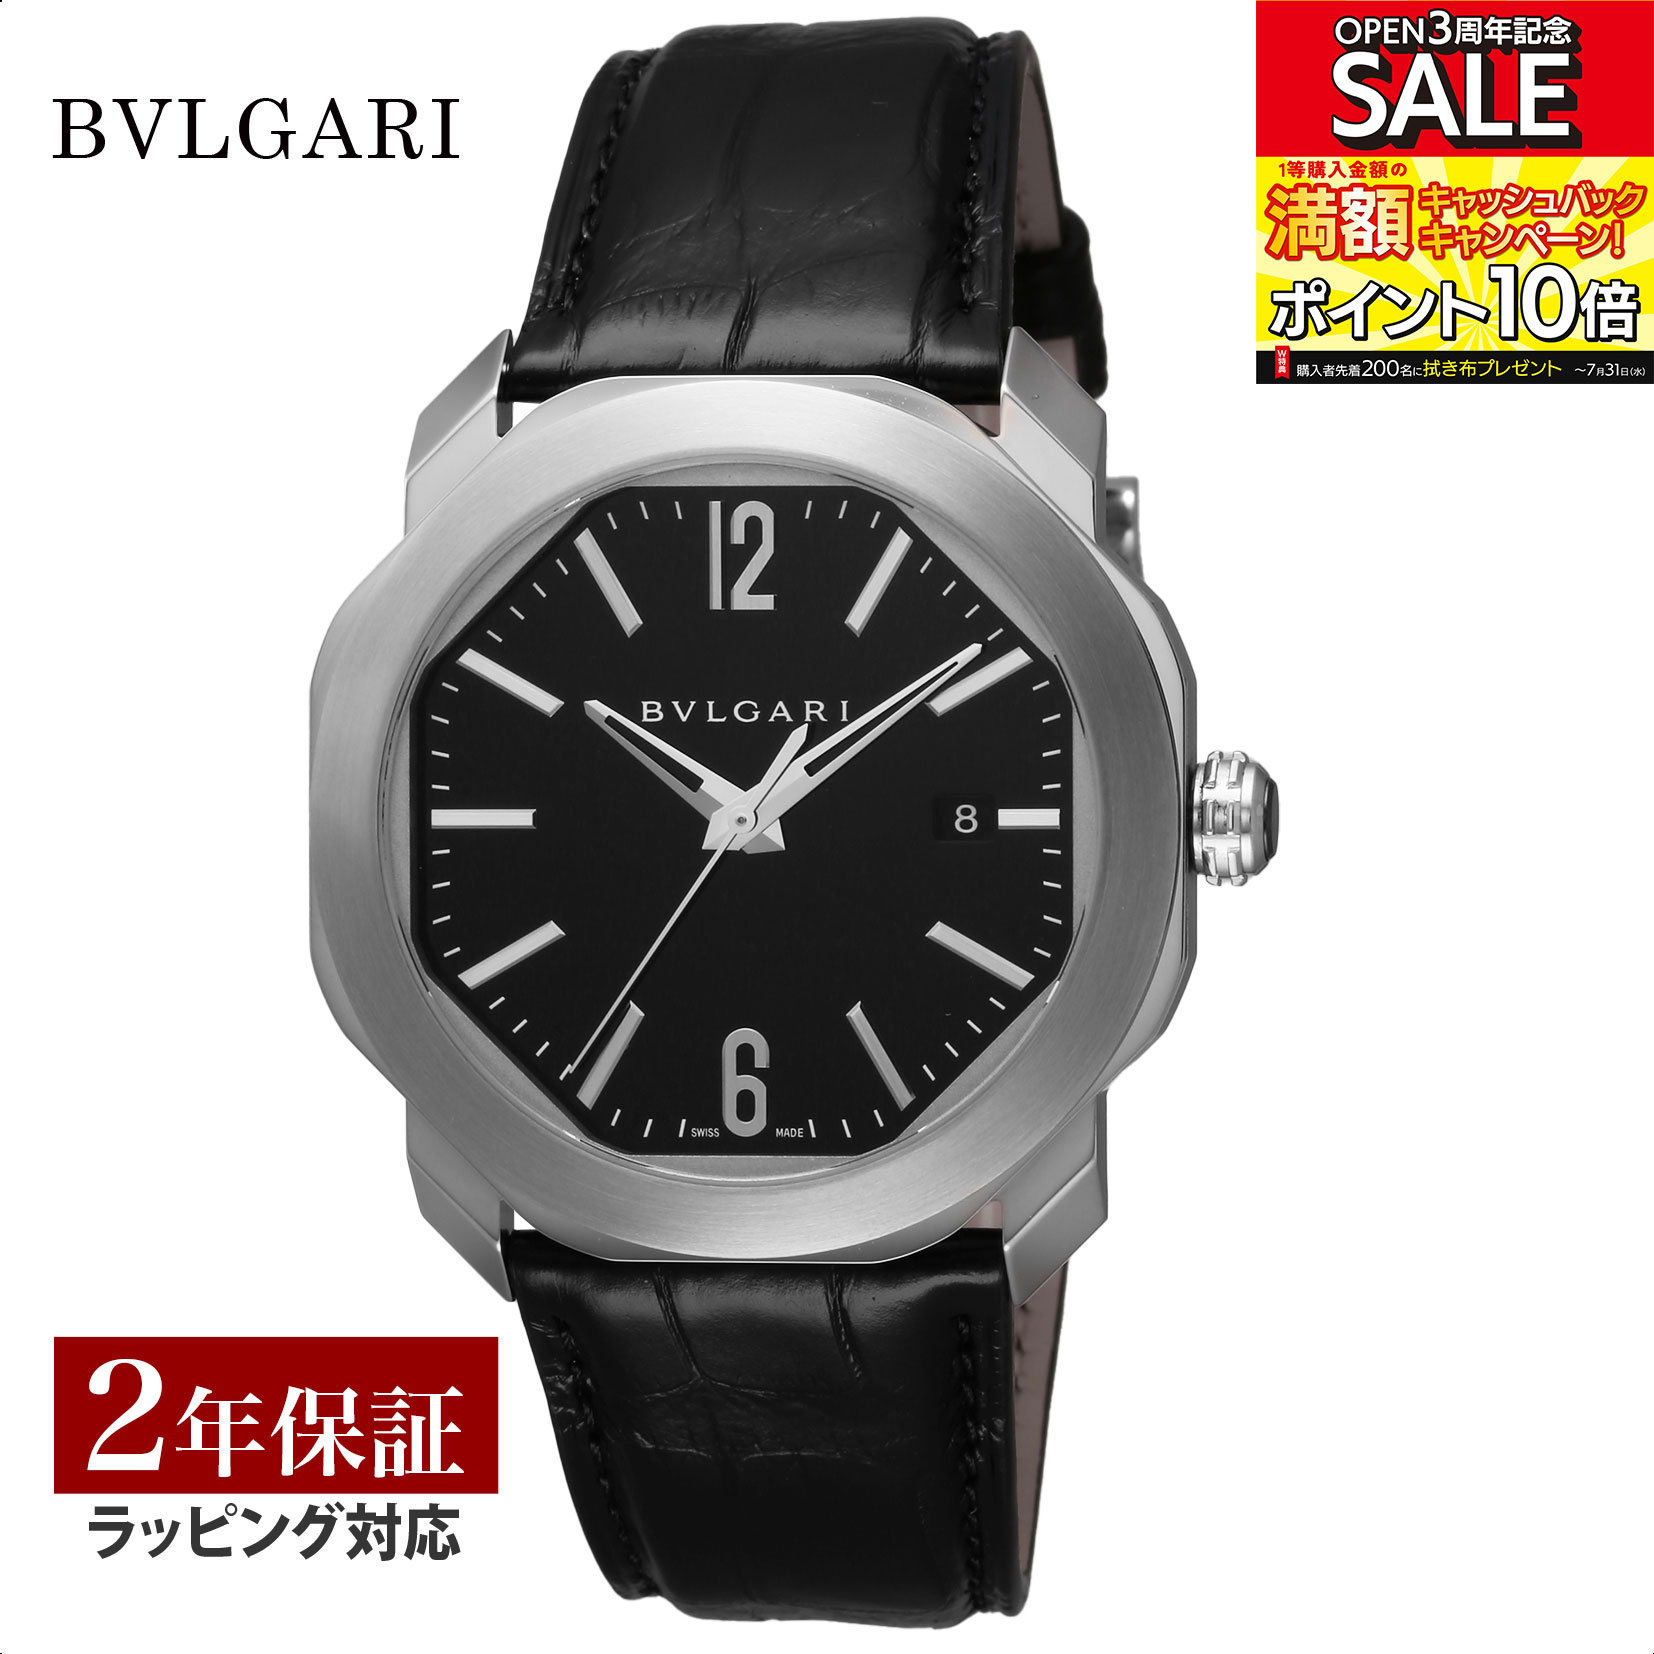 ブルガリ BVLGARI メンズ 時計 オクト Octo 自動巻 ブラック OC41BSLD 腕時計 高級腕時計 ブランド